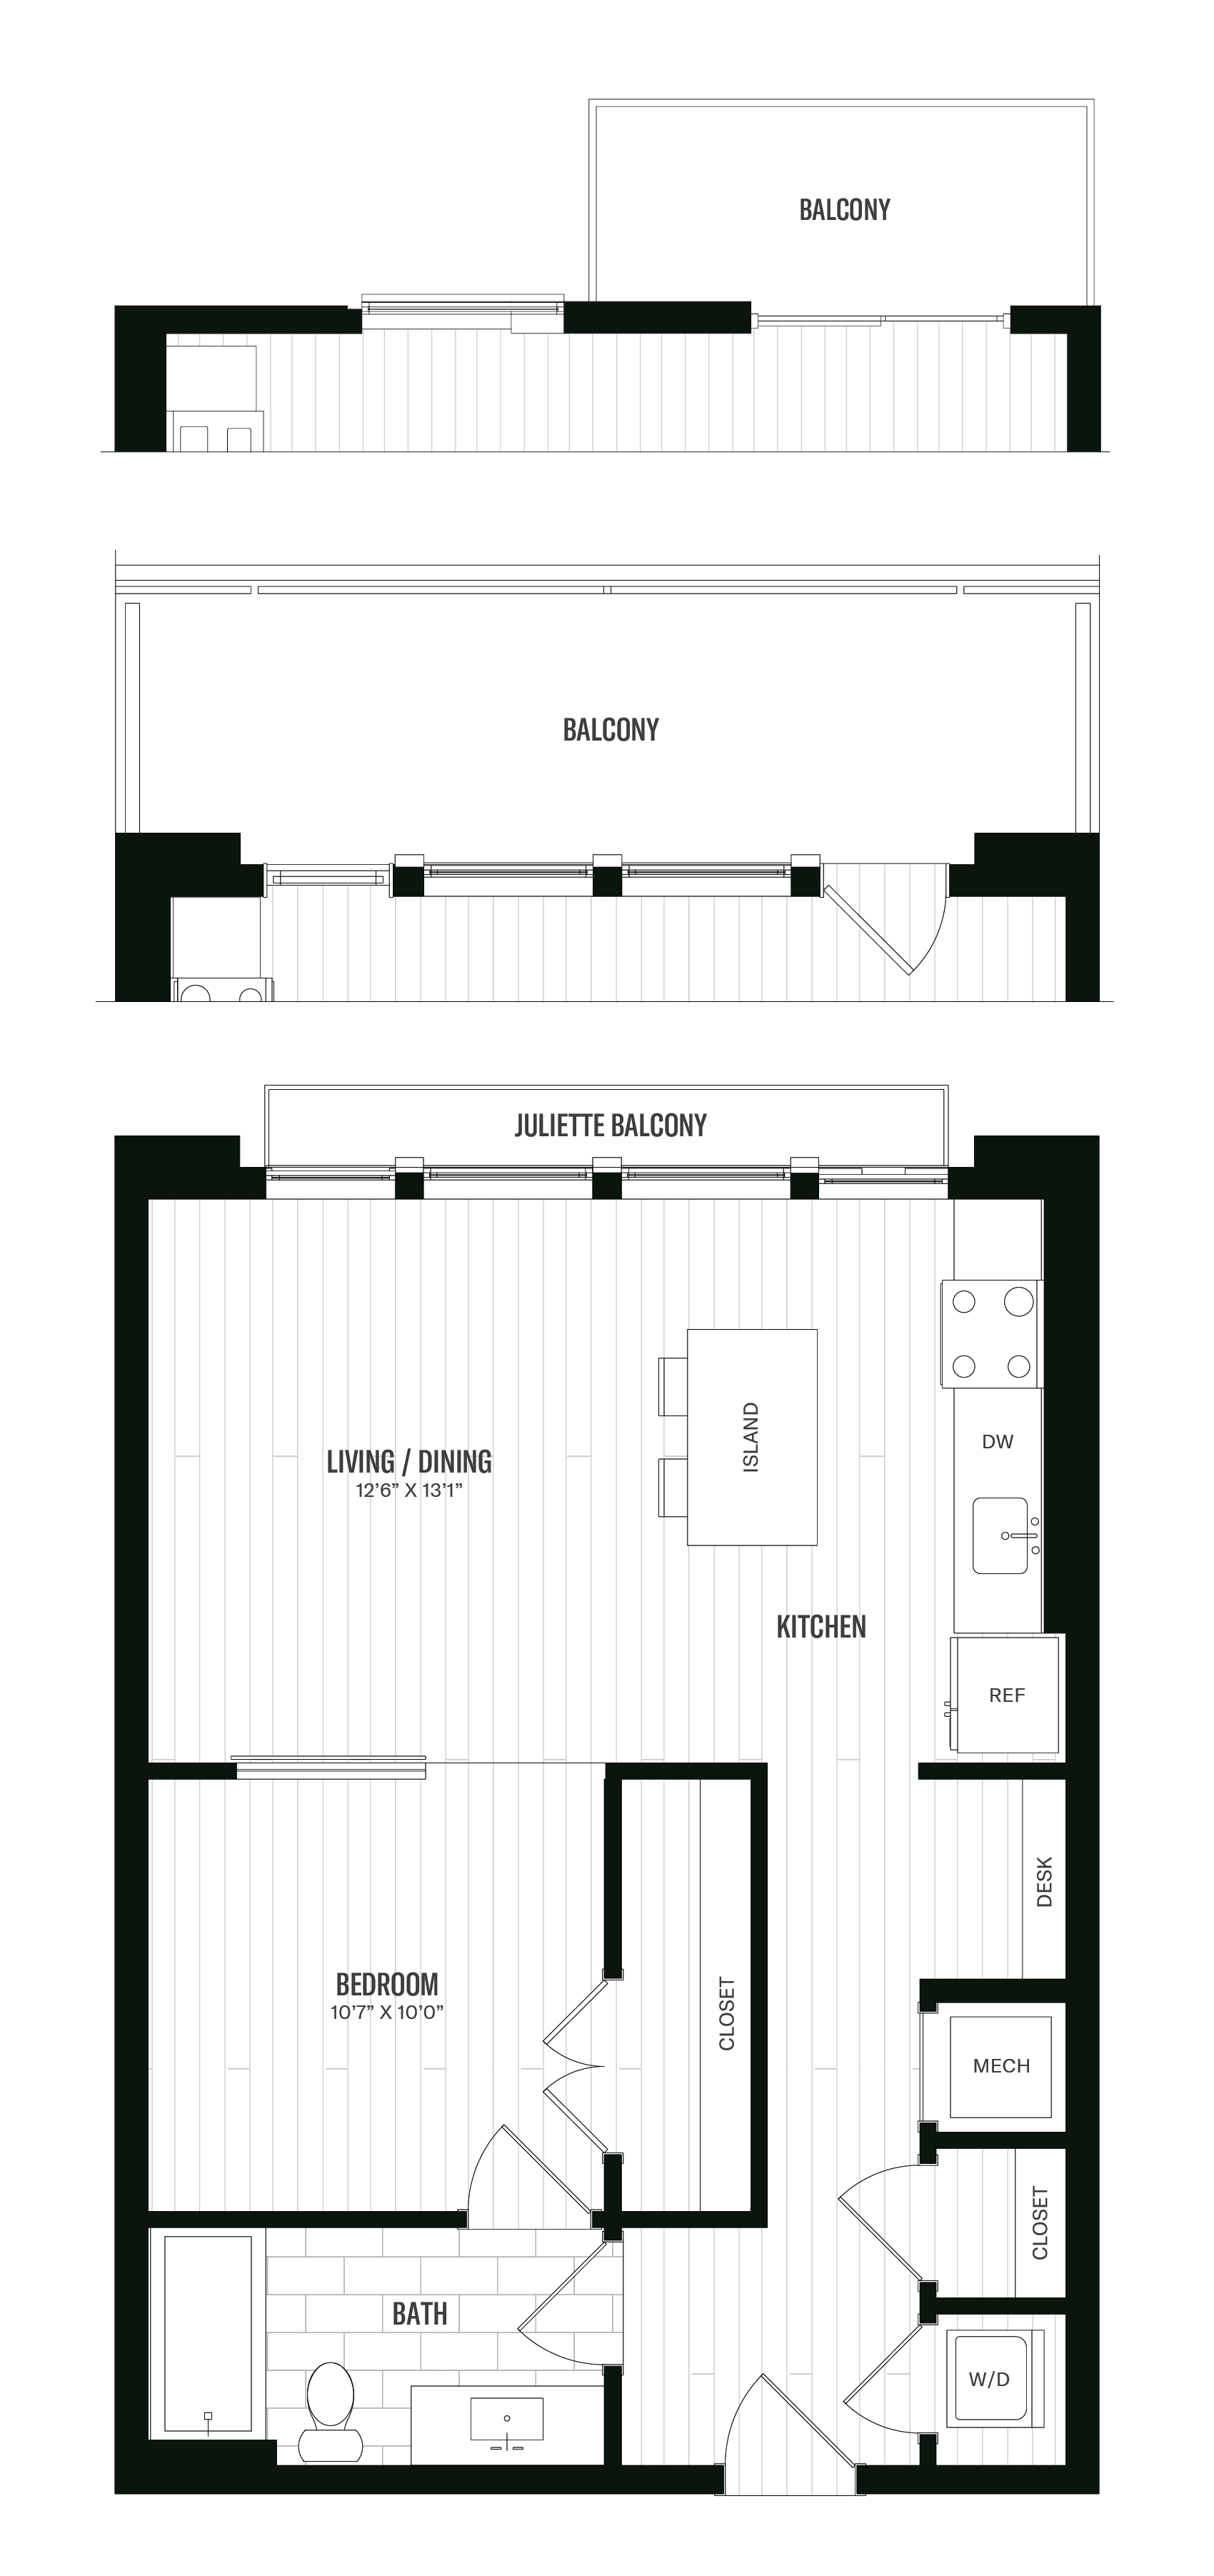 Floorplan image of unit 313